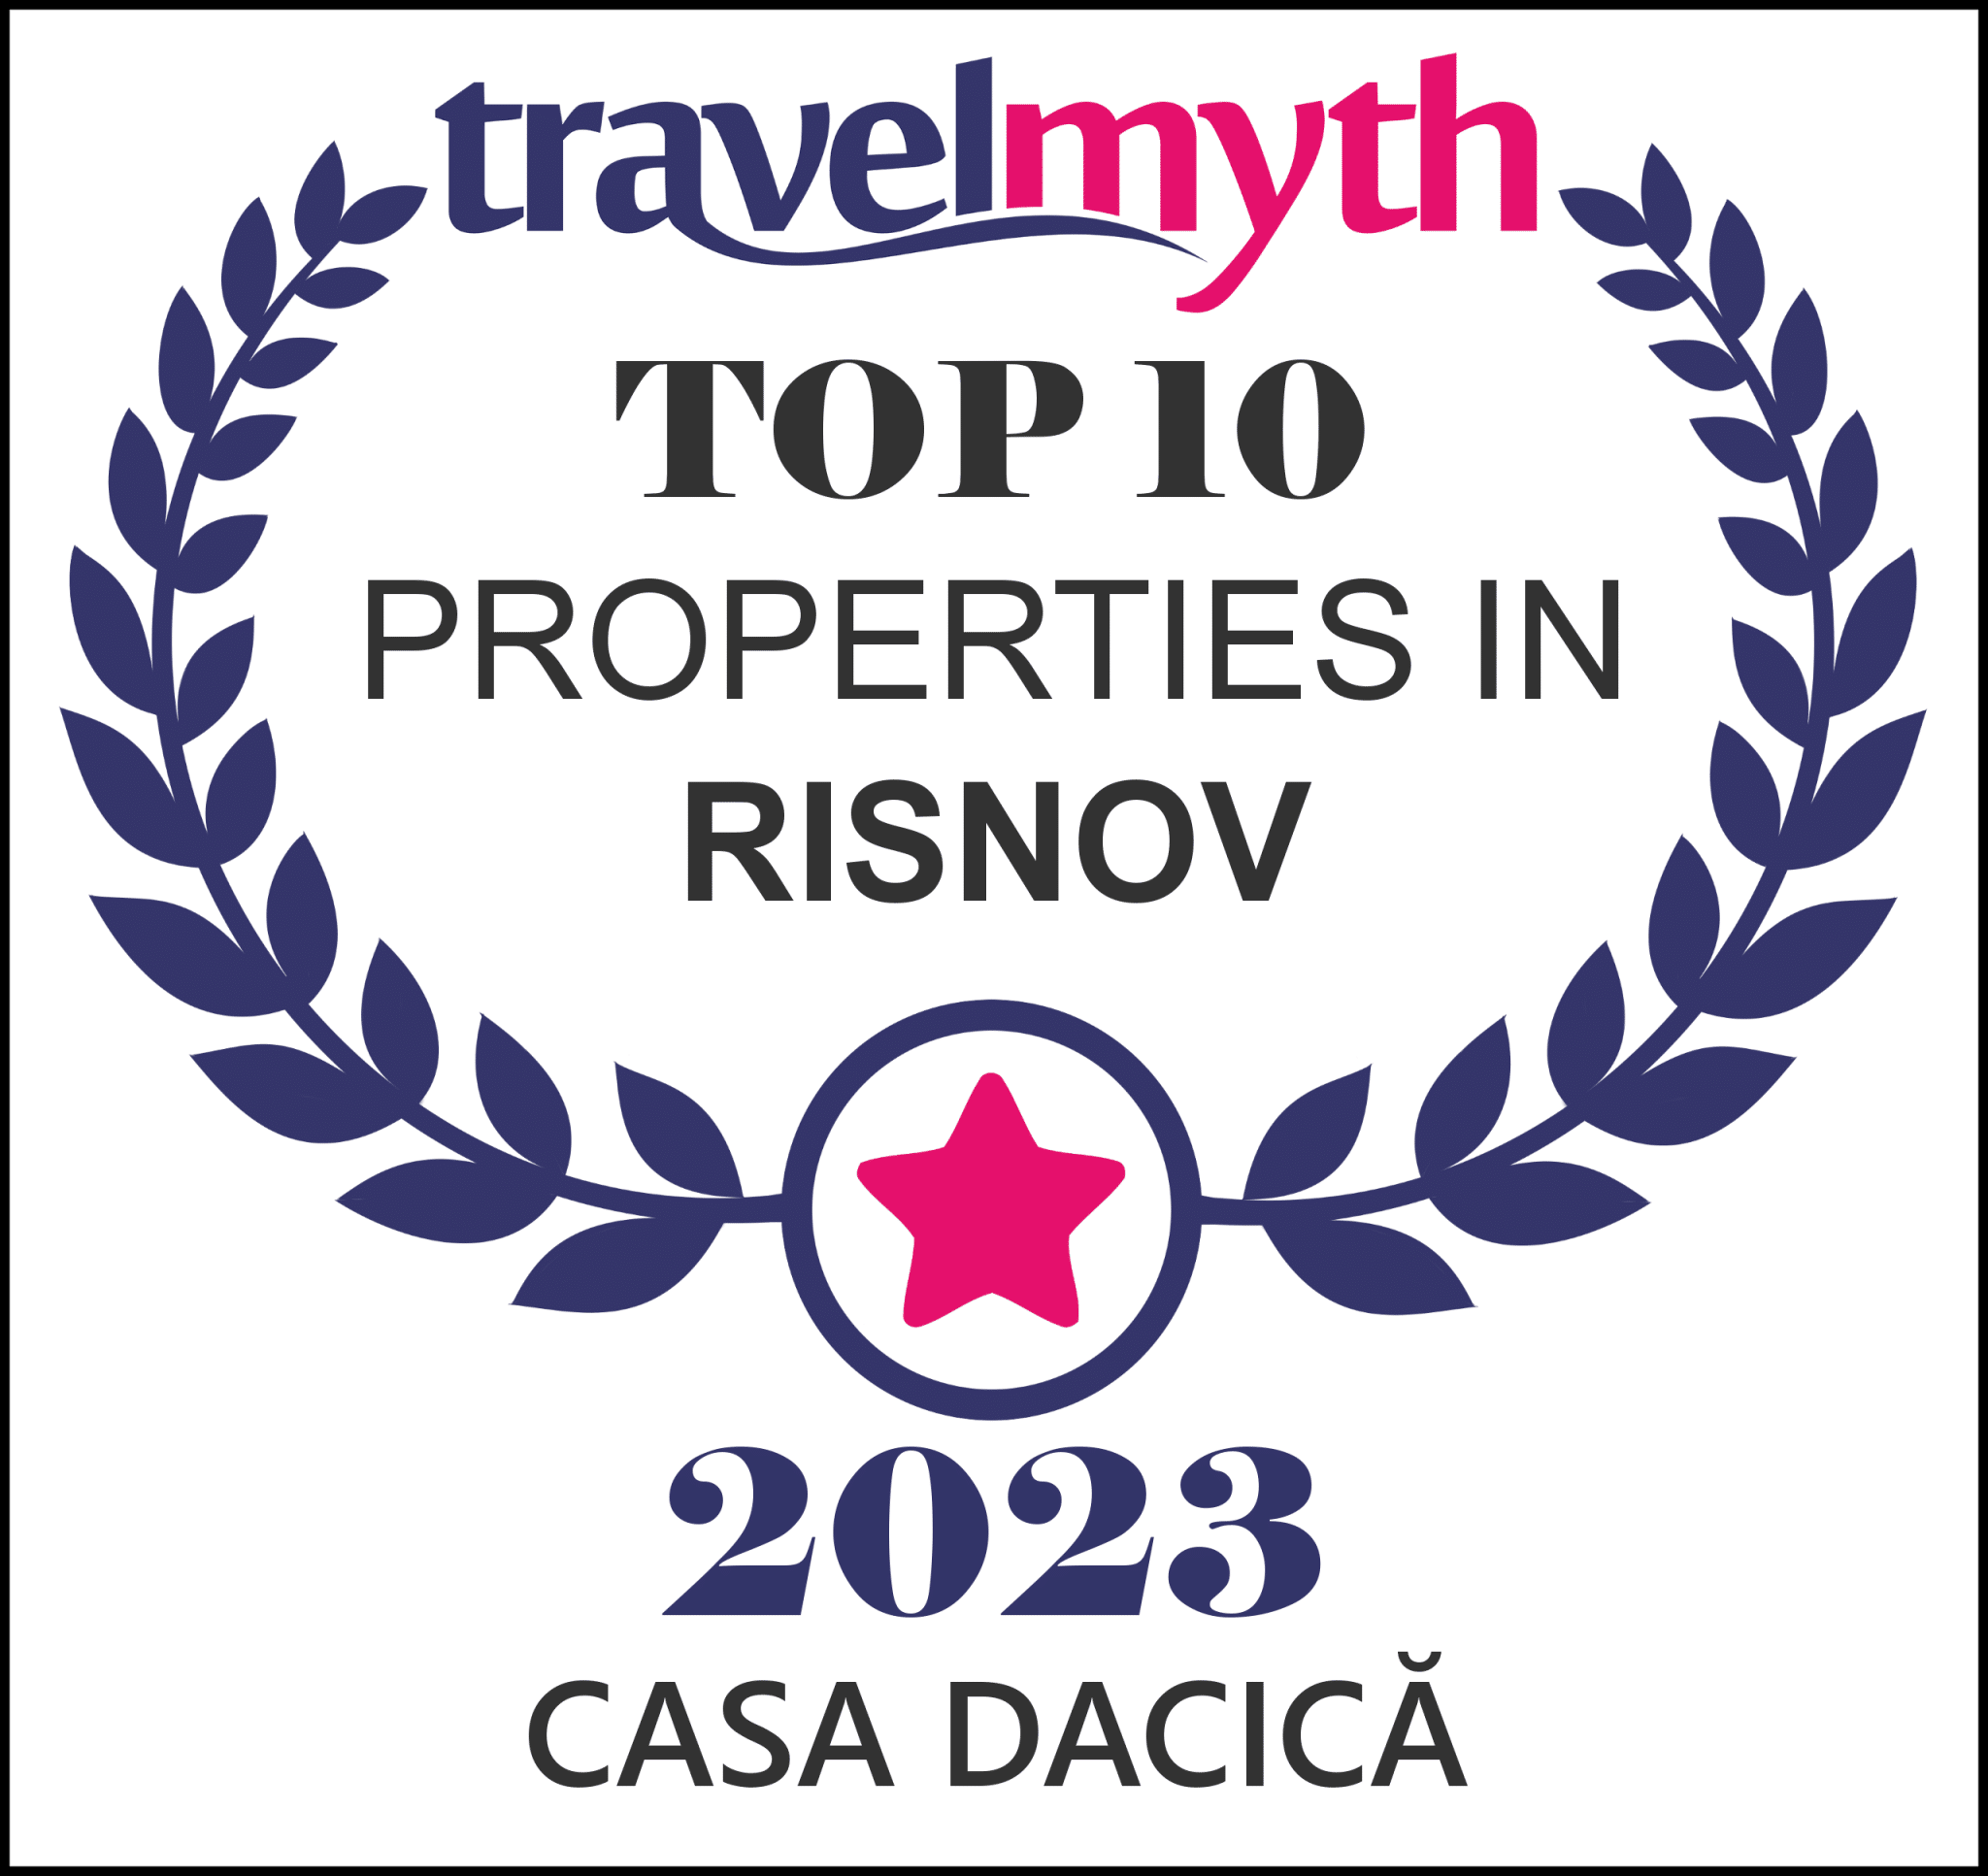 Risnov hotels